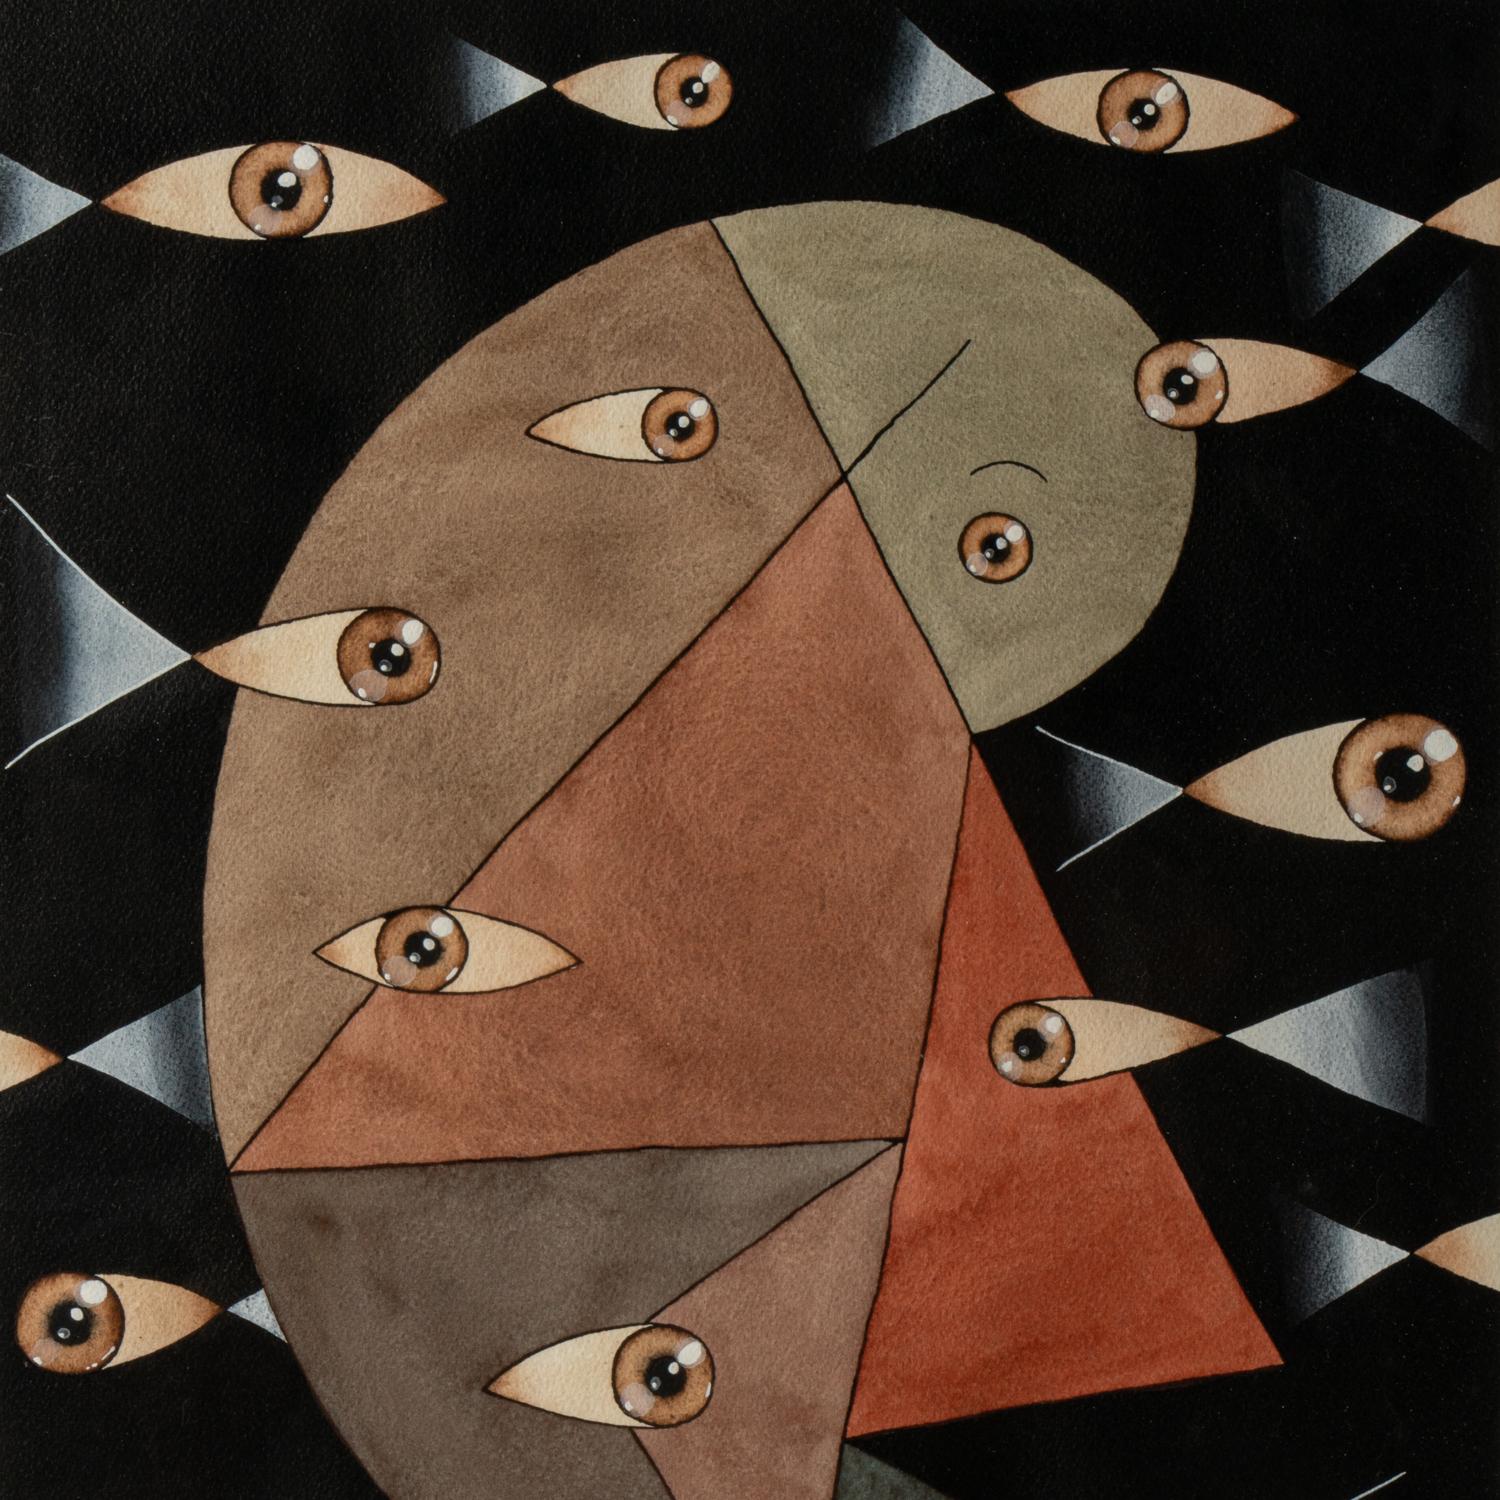 Fondimare, unterzeichnet.

Gouache oder Mischtechnik im surrealistischen Stil, die abstrakte Gesichter und Augen darstellt, in Rot- und Blautönen und auf schwarzem Grund
Hintergrund.

Das Werk wurde in den 1980er Jahren realisiert.